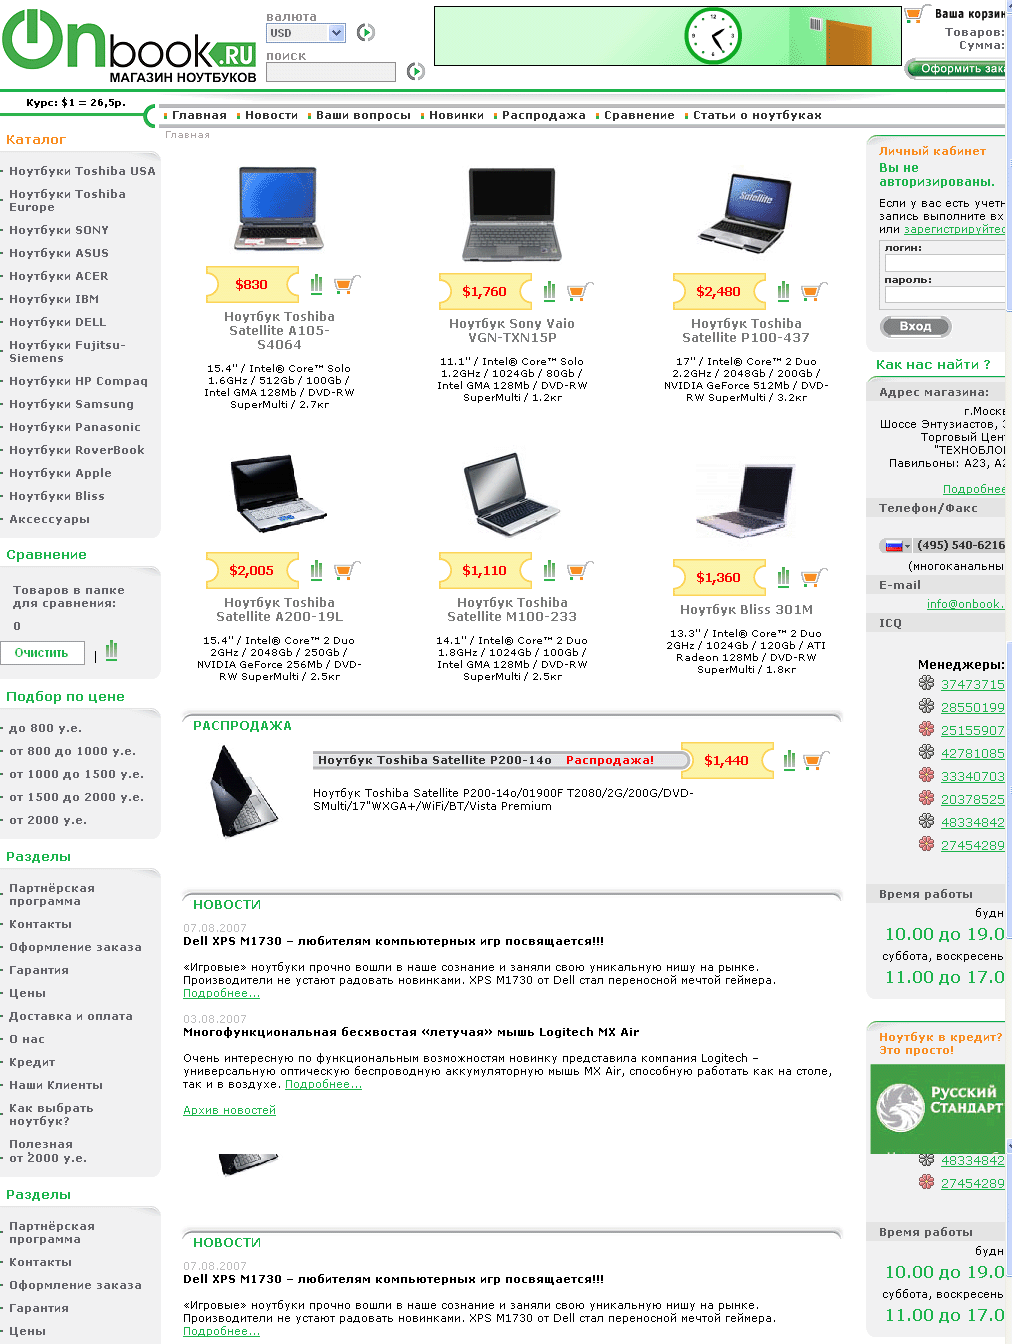 Cозданый интернет-магазин ноутбуков США, Японии, Кореи